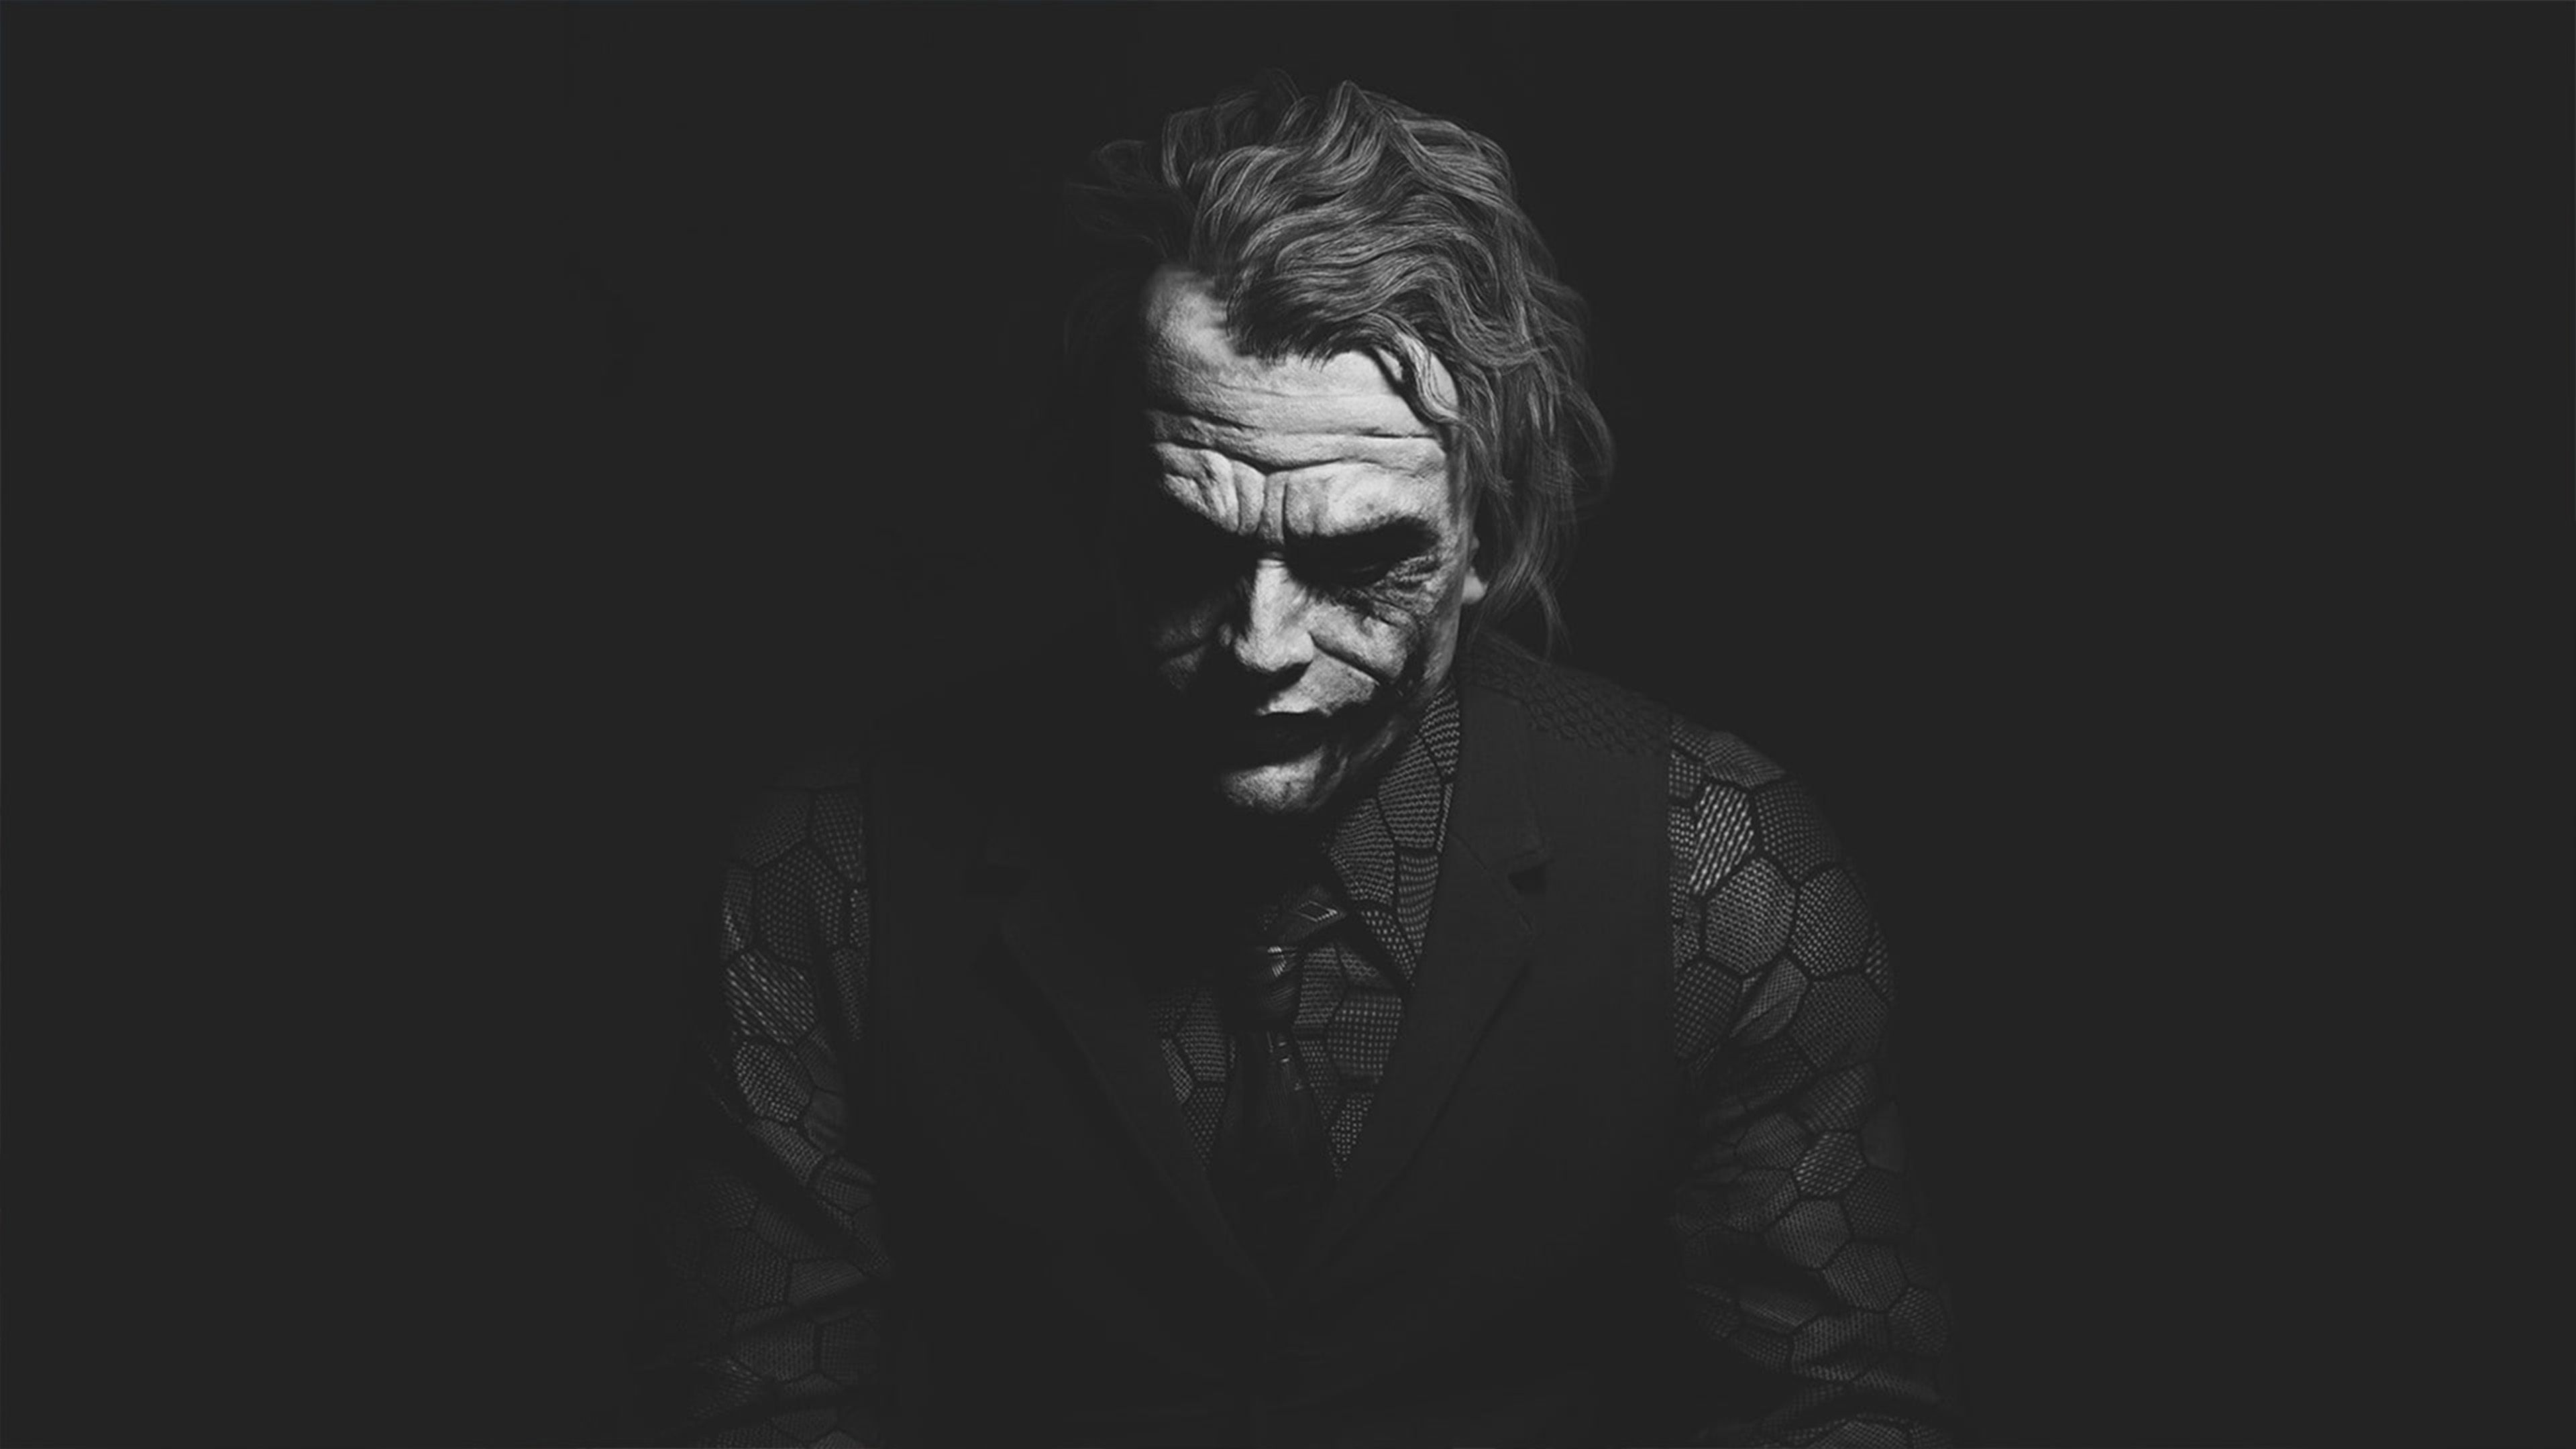 Heath Ledger Joker Black & White Dark Background 4K, 5K, 8K, Desktop & Mobile Background Wallpaper